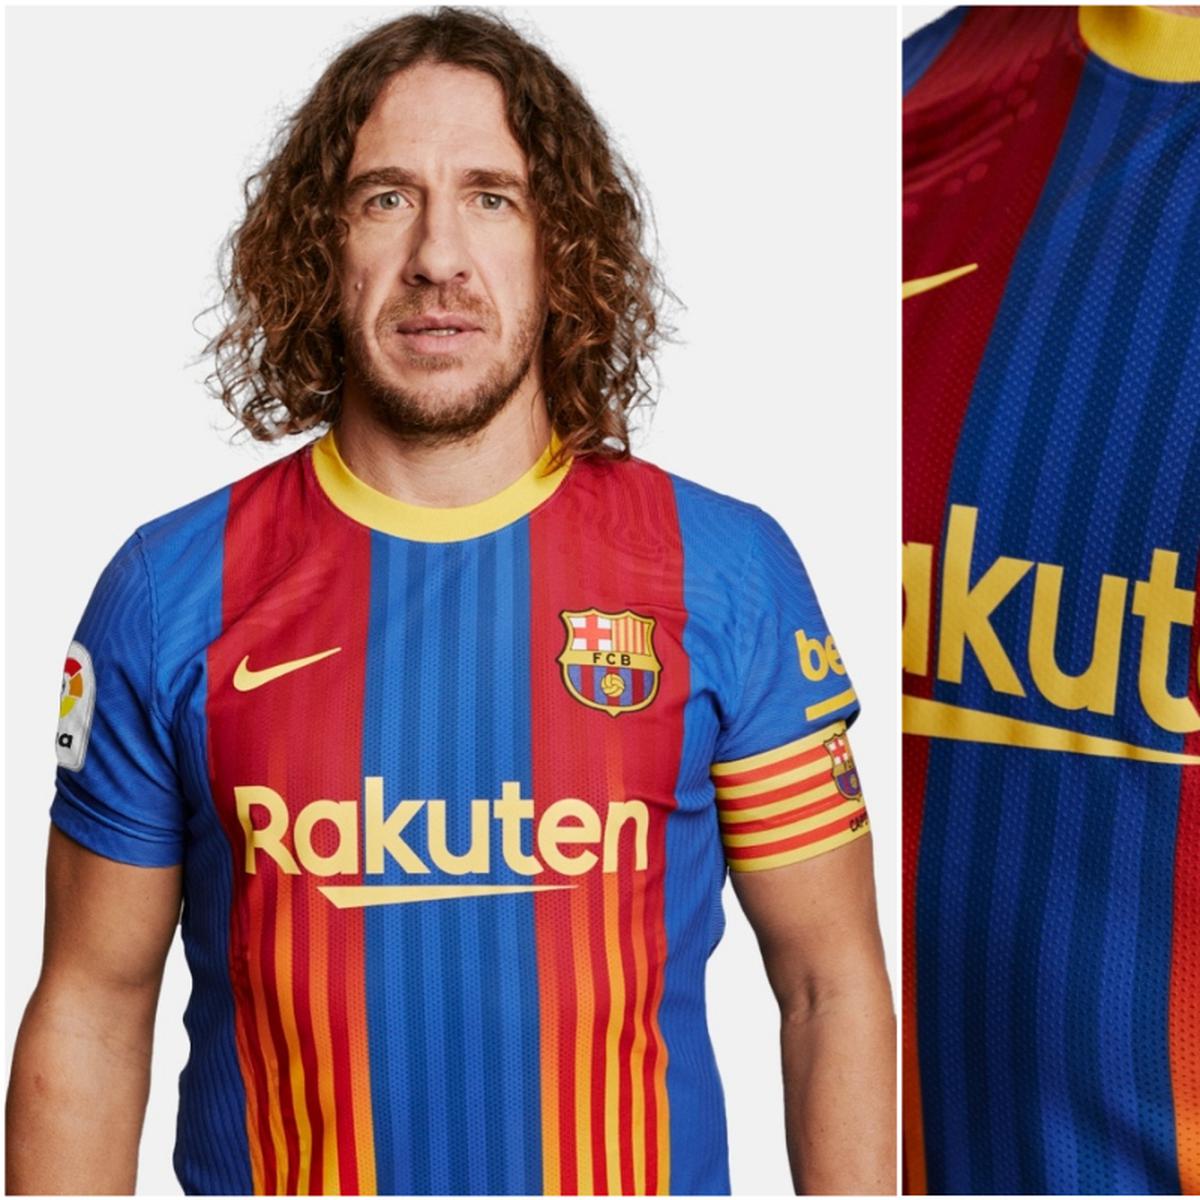 El FC Barcelona lanza un nuevo diseño muy similar a la camiseta más mítica  del Zamora CF